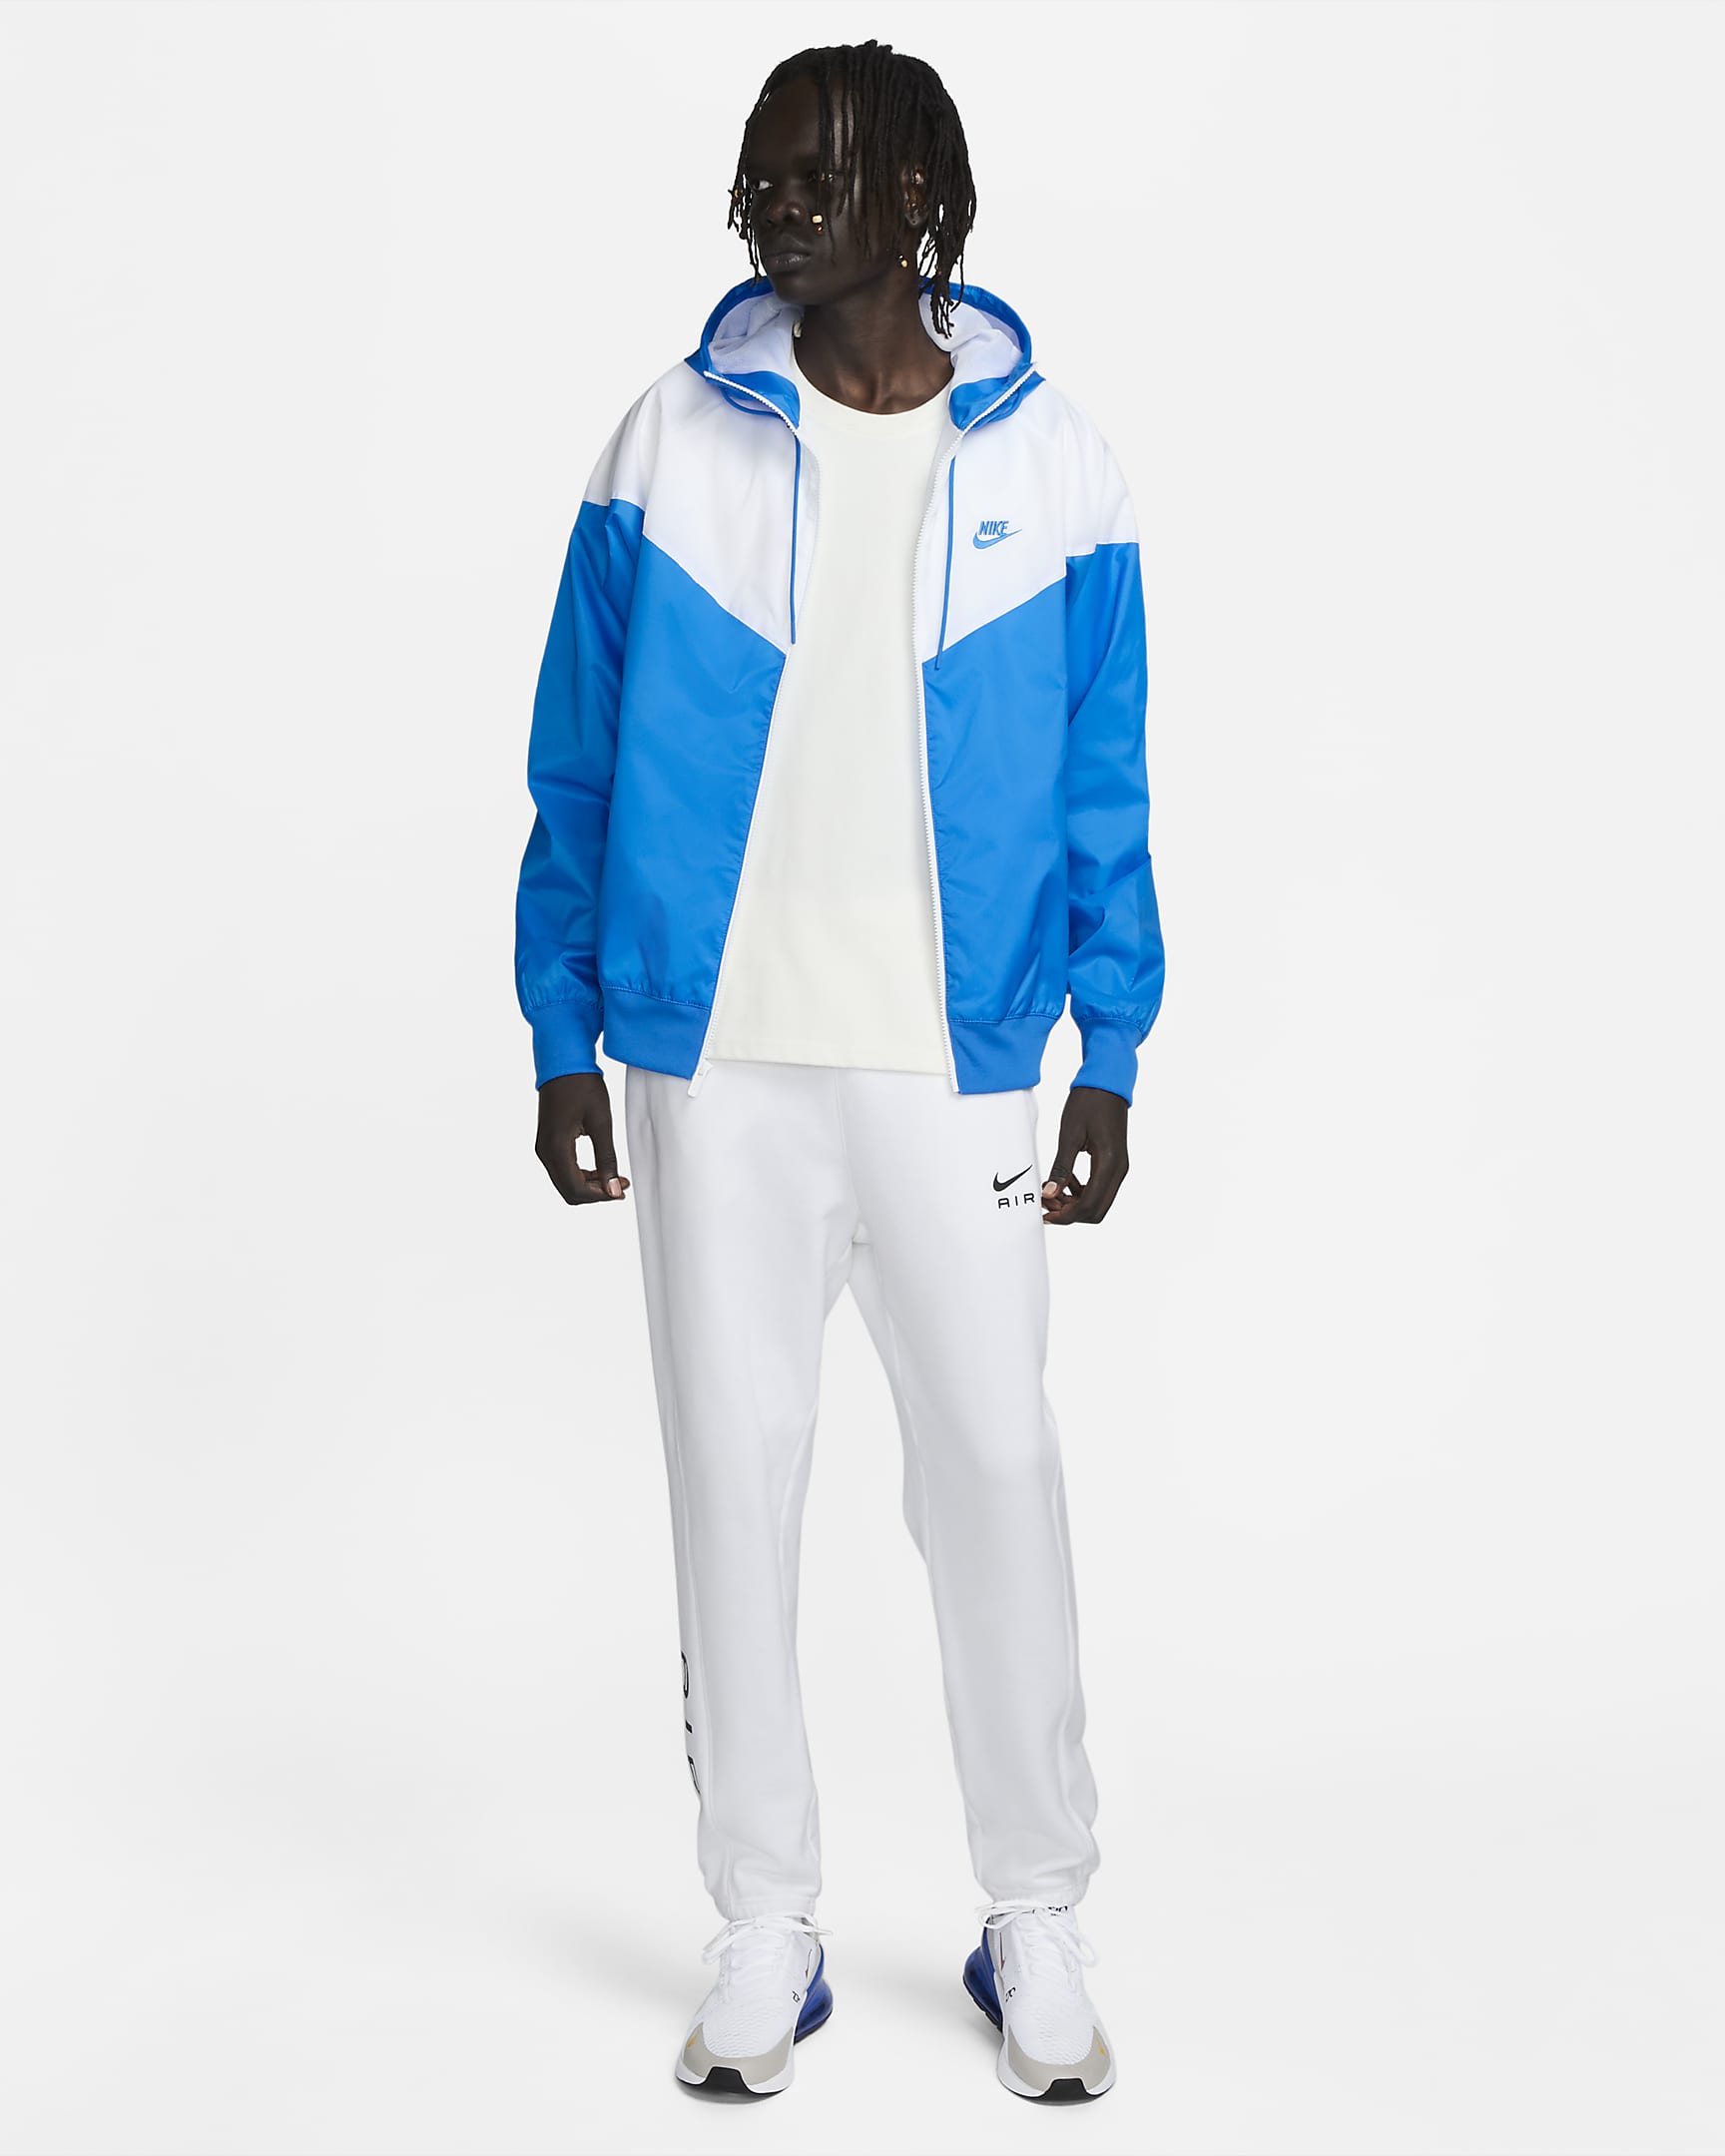 Nike Sportswear Windrunner Men's Hooded Jacket. Nike ZA